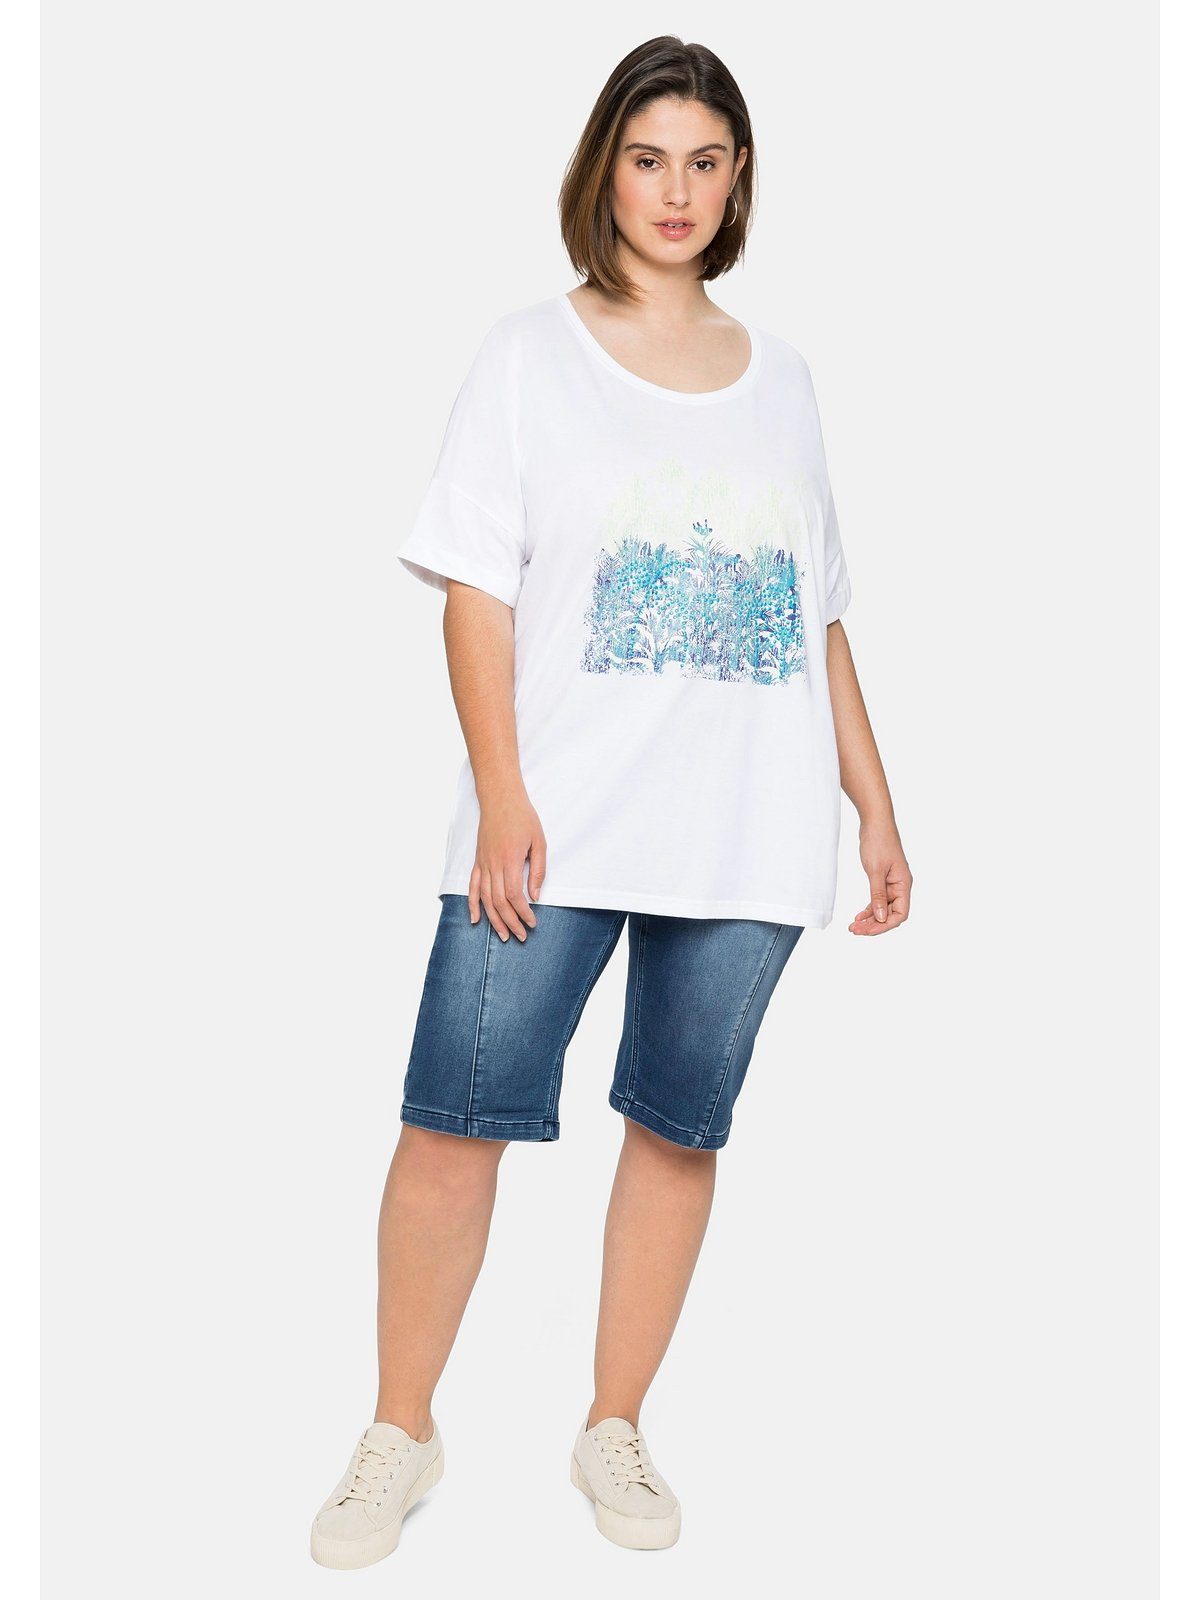 Frontdruck mit Größen und Große T-Shirt Sheego Ärmelaufschlag weiß